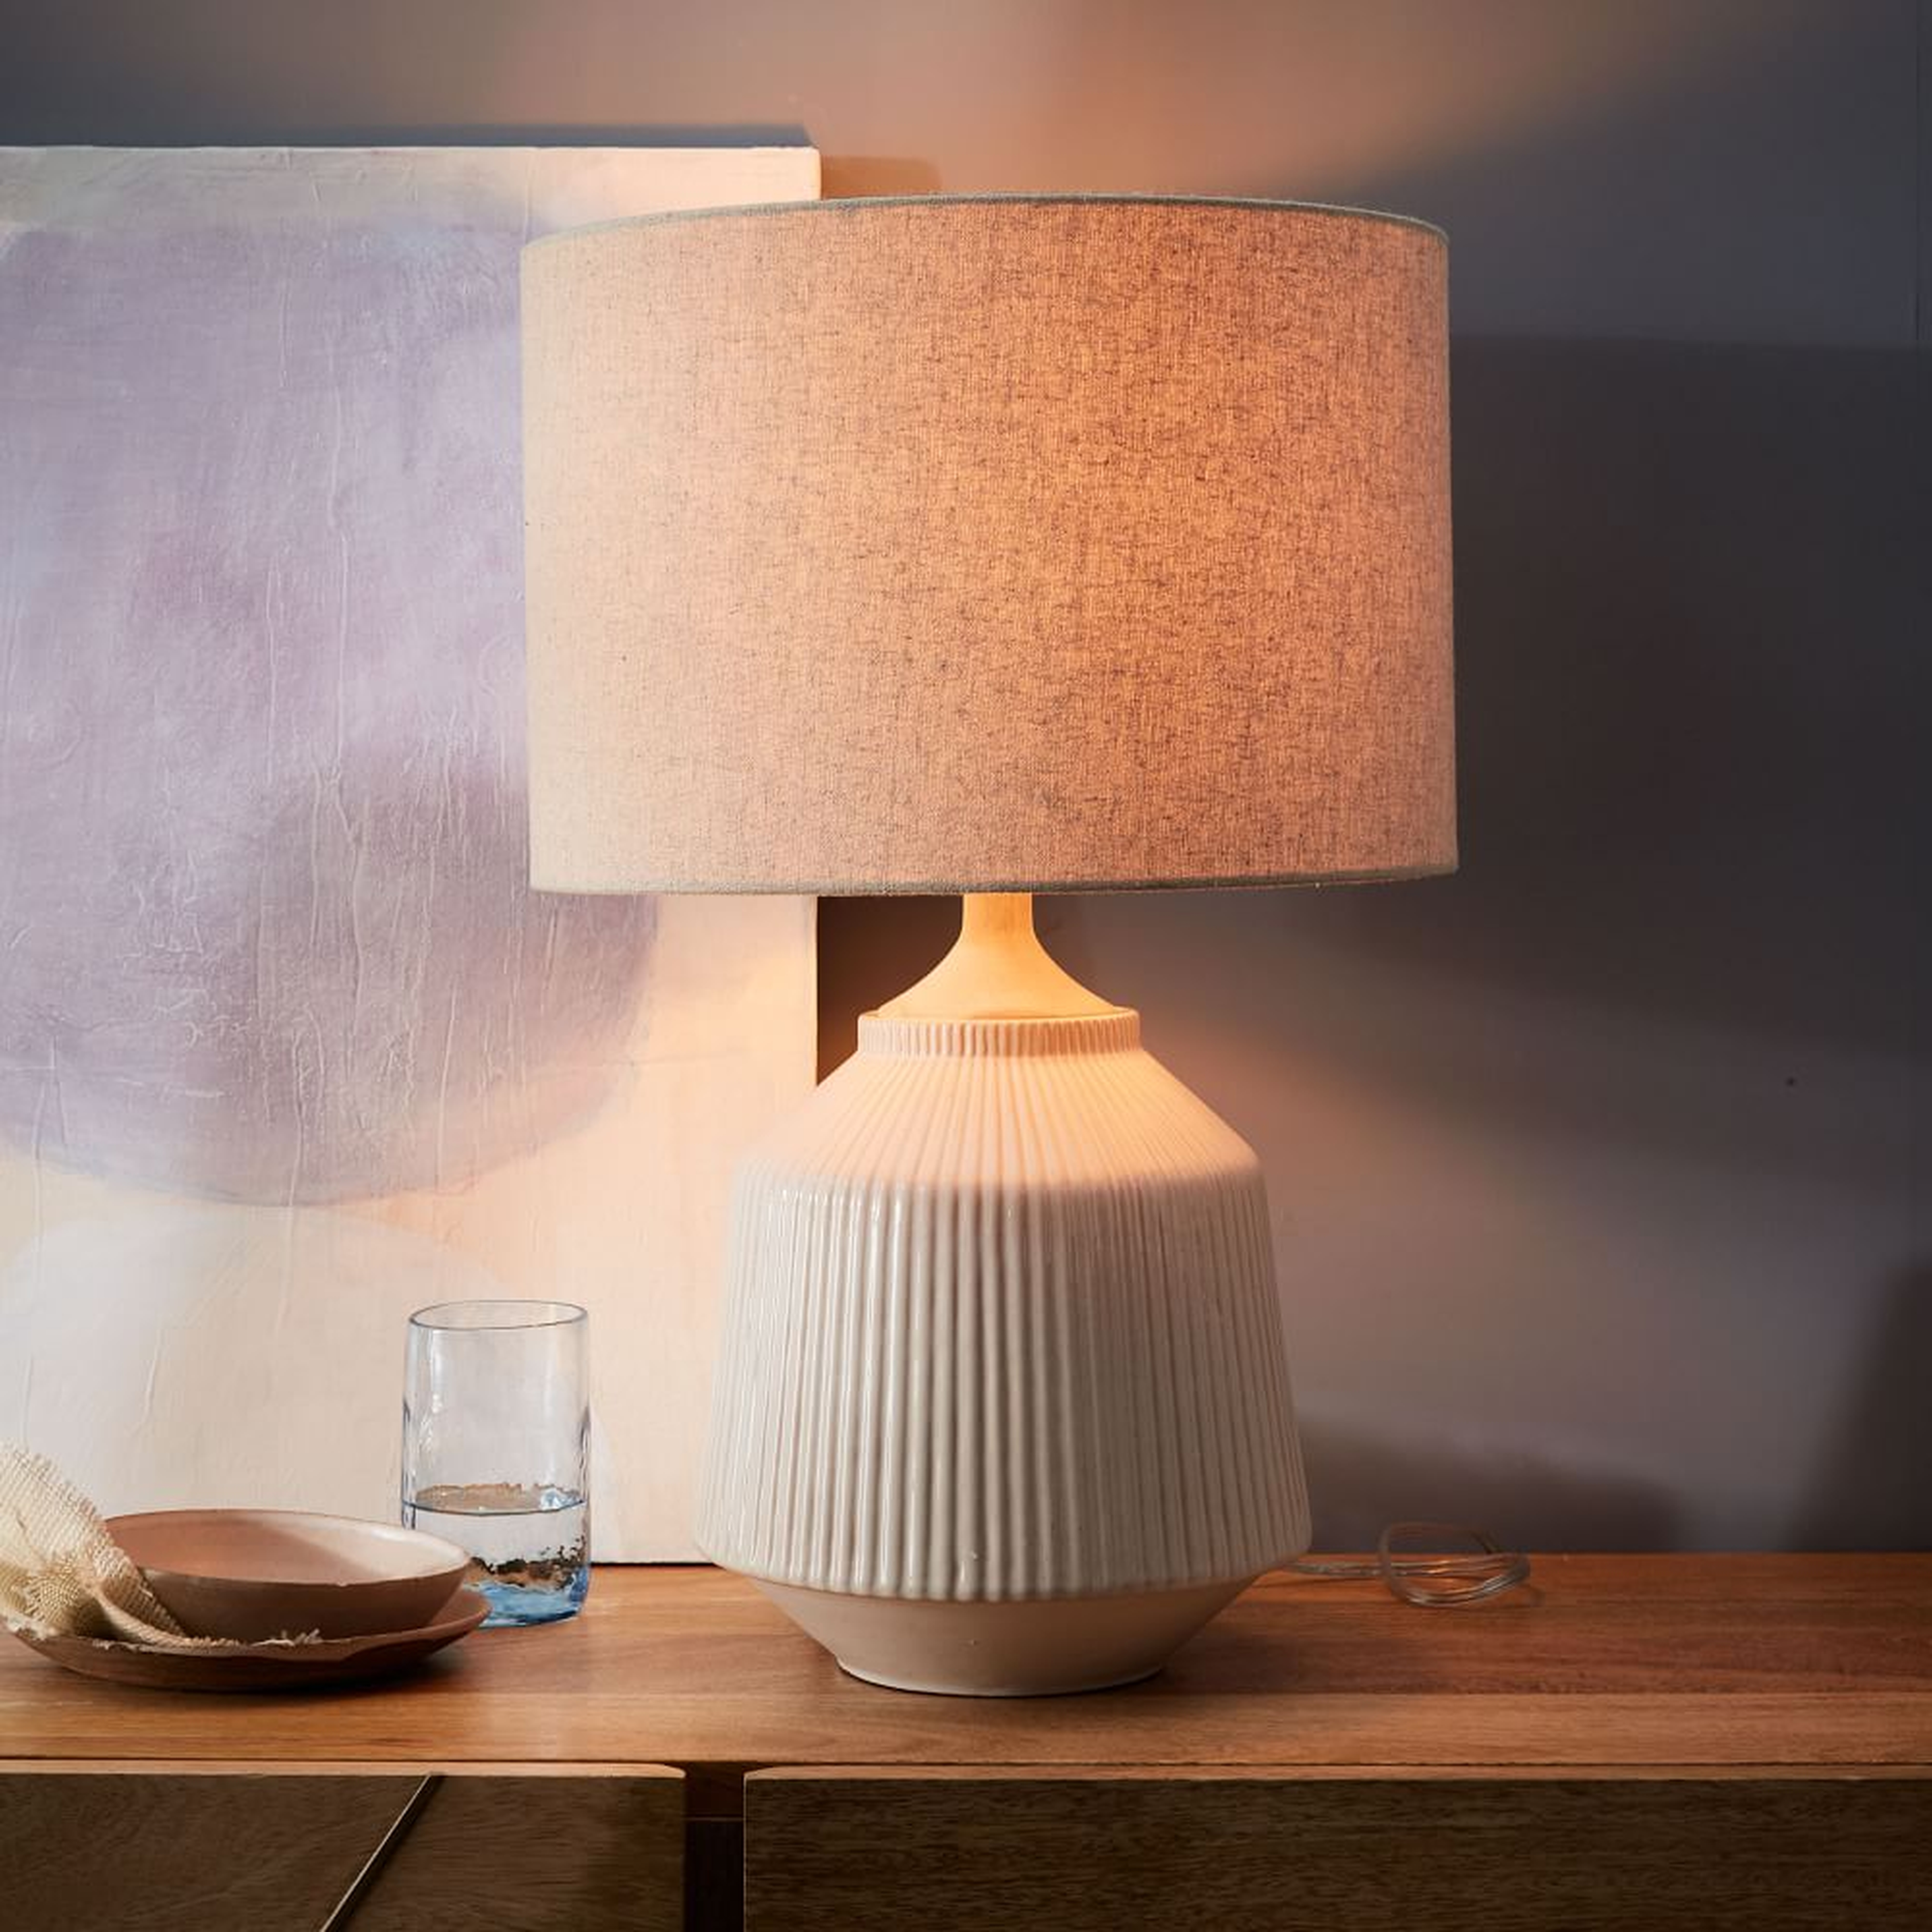 Roar + Rabbit Ceramic Table Lamp, White, Tall, Set of 2 - West Elm